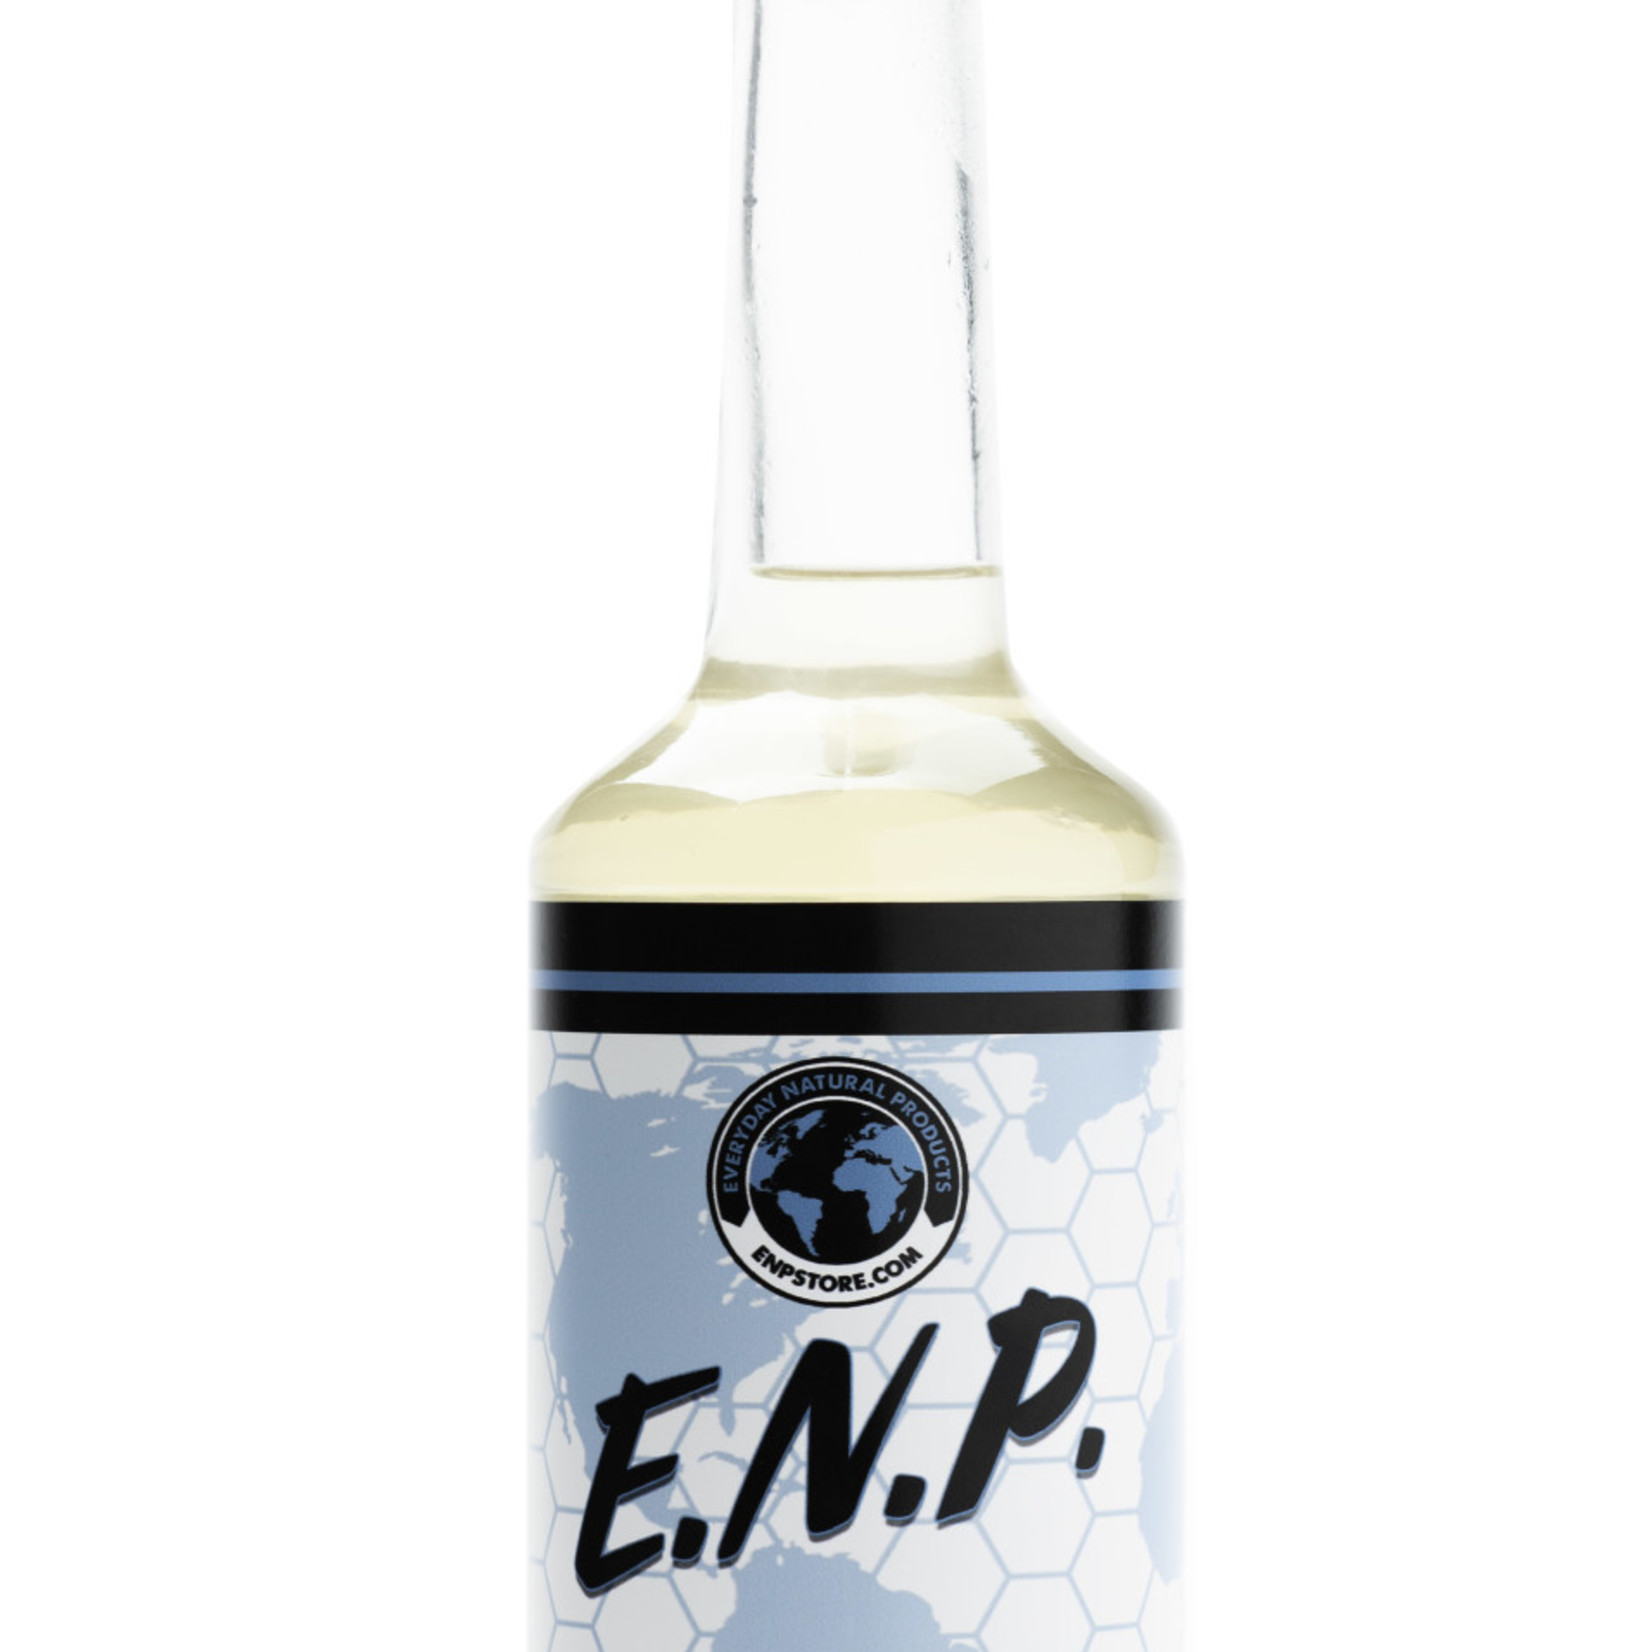 ENP 1E-10oz Lion's Mane Elixir